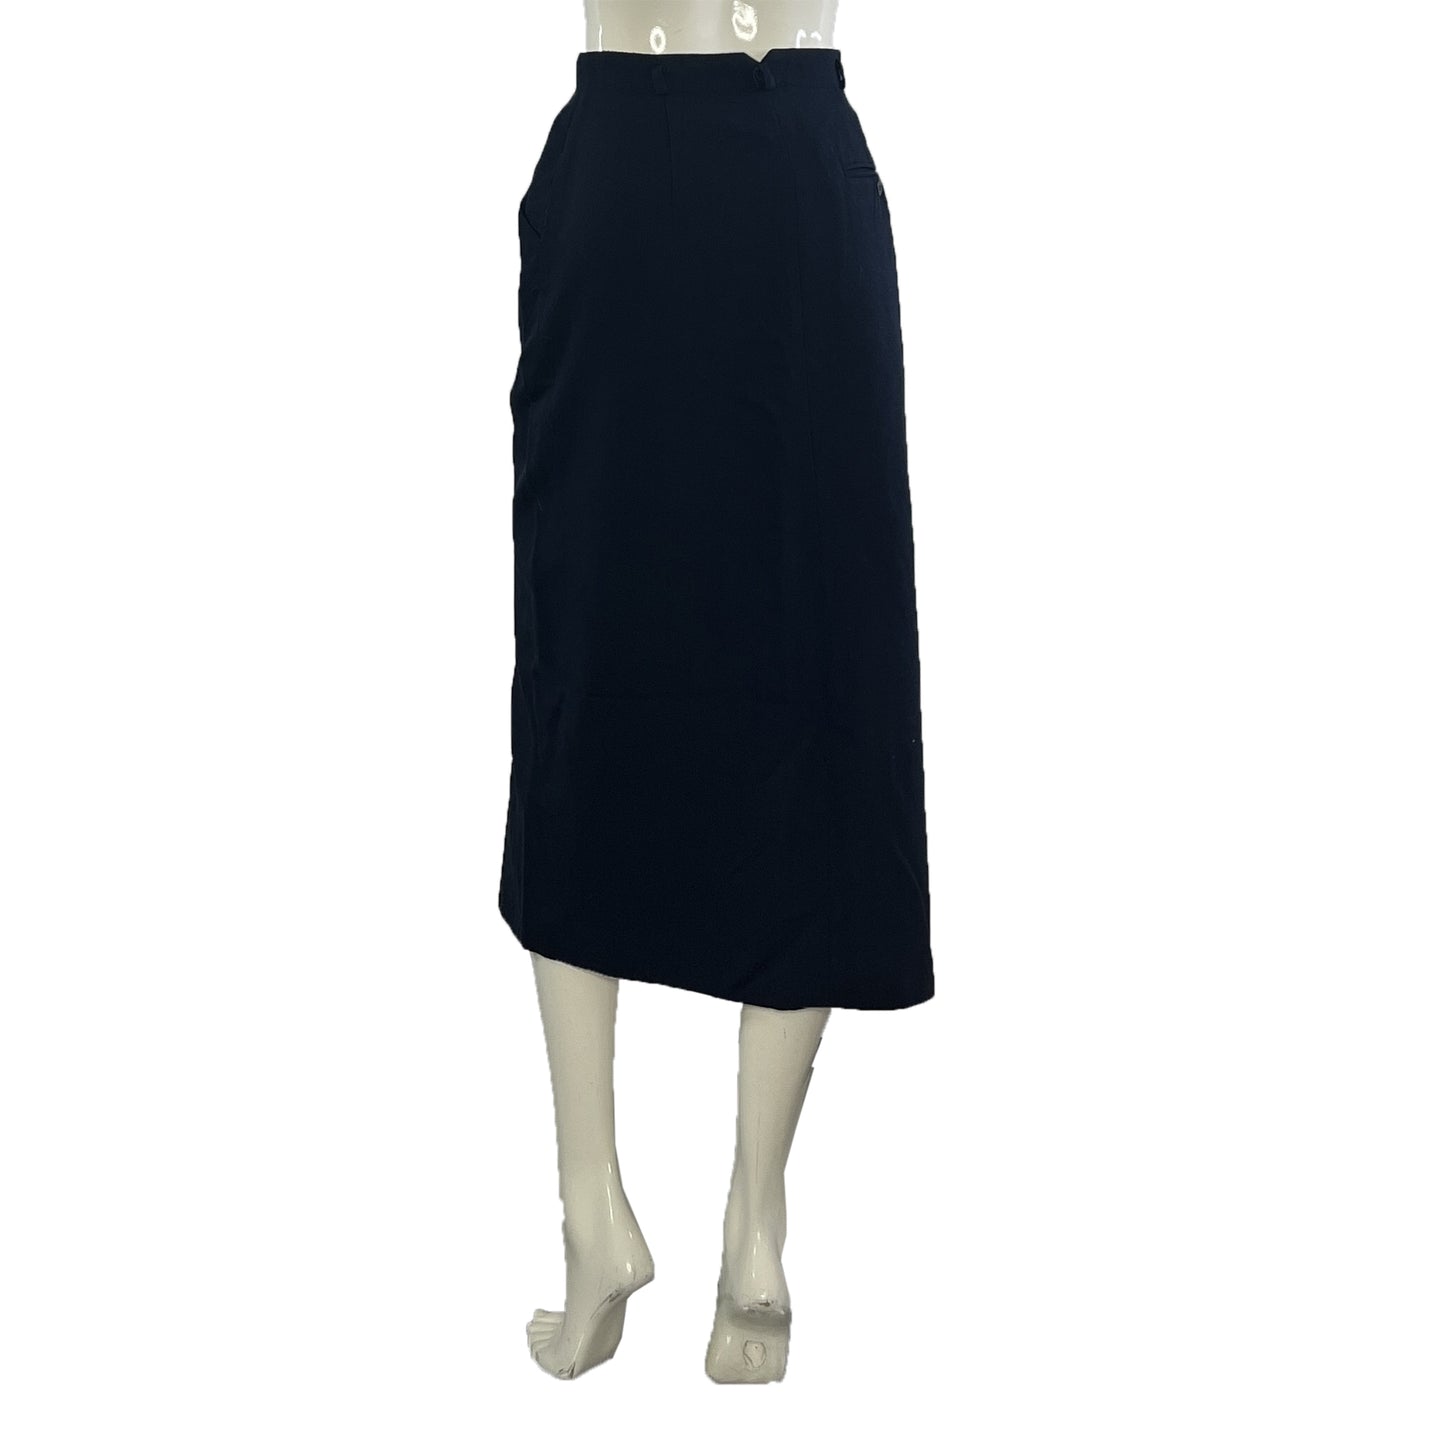 Jones New York Skirt Below-Knee Navy Size 10 SKU 000417